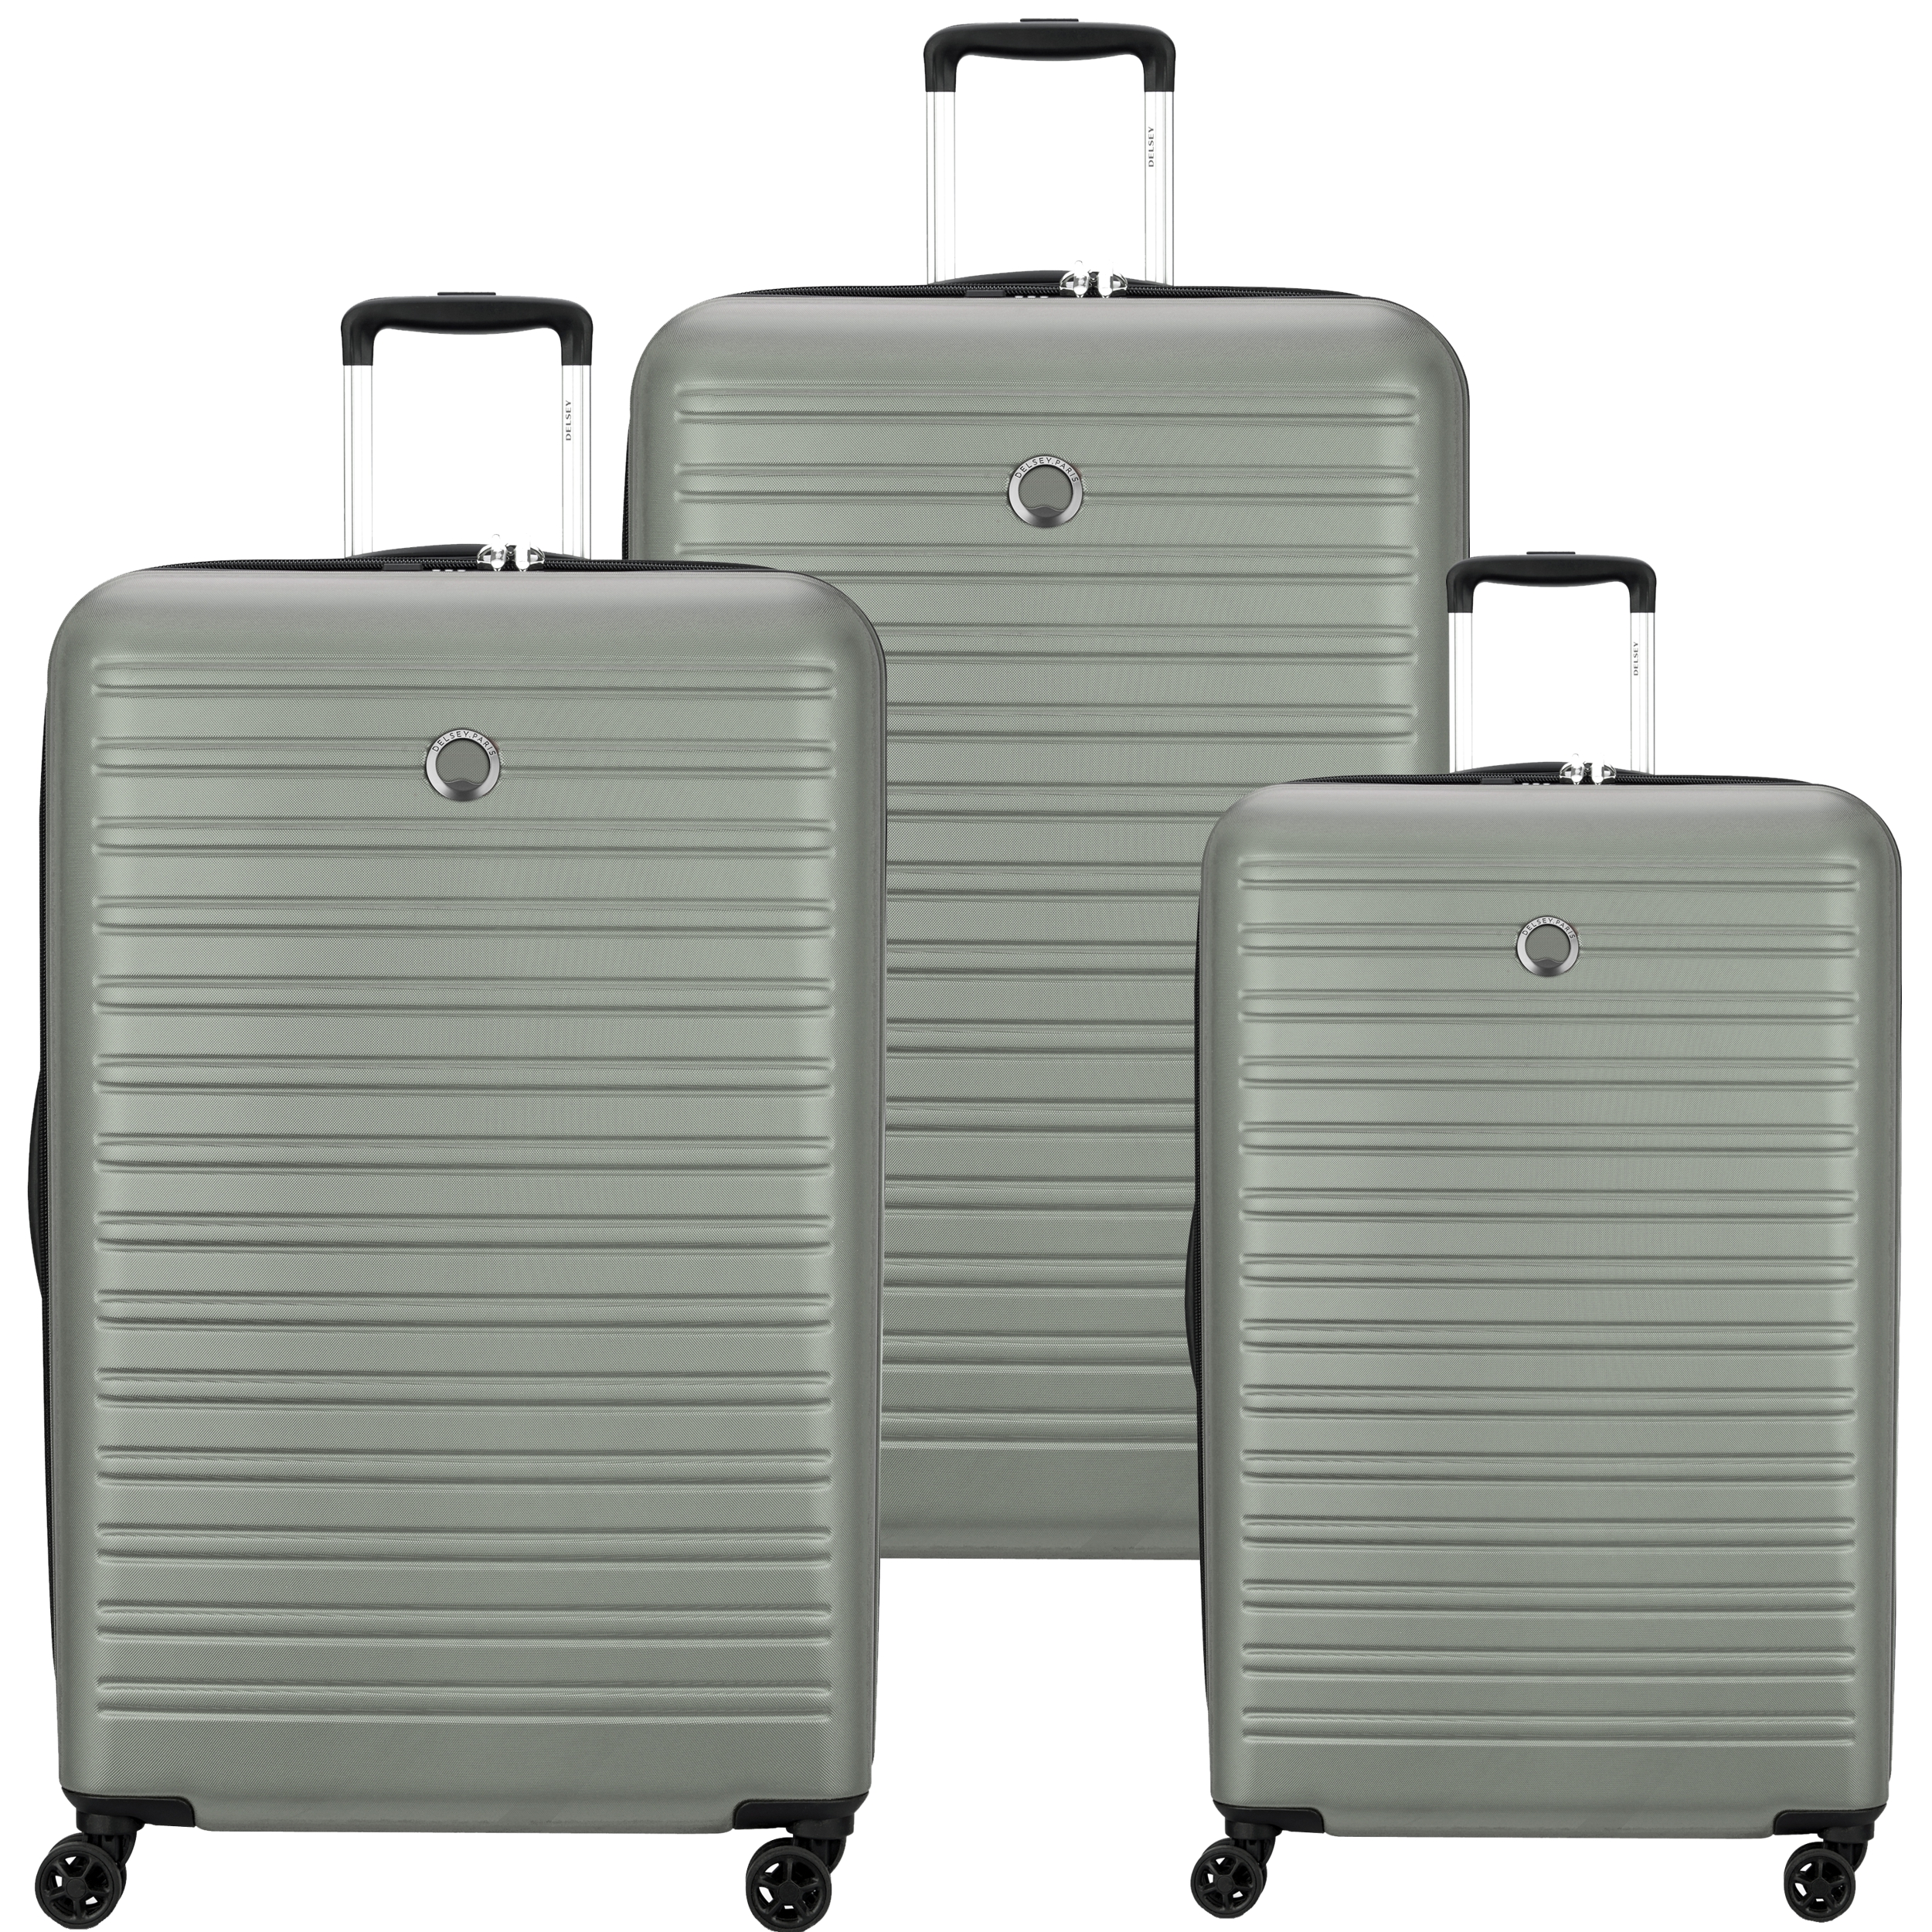 مجموعه 3 عددی چمدان دلسی مدل SEGUR 2 کد 2058980